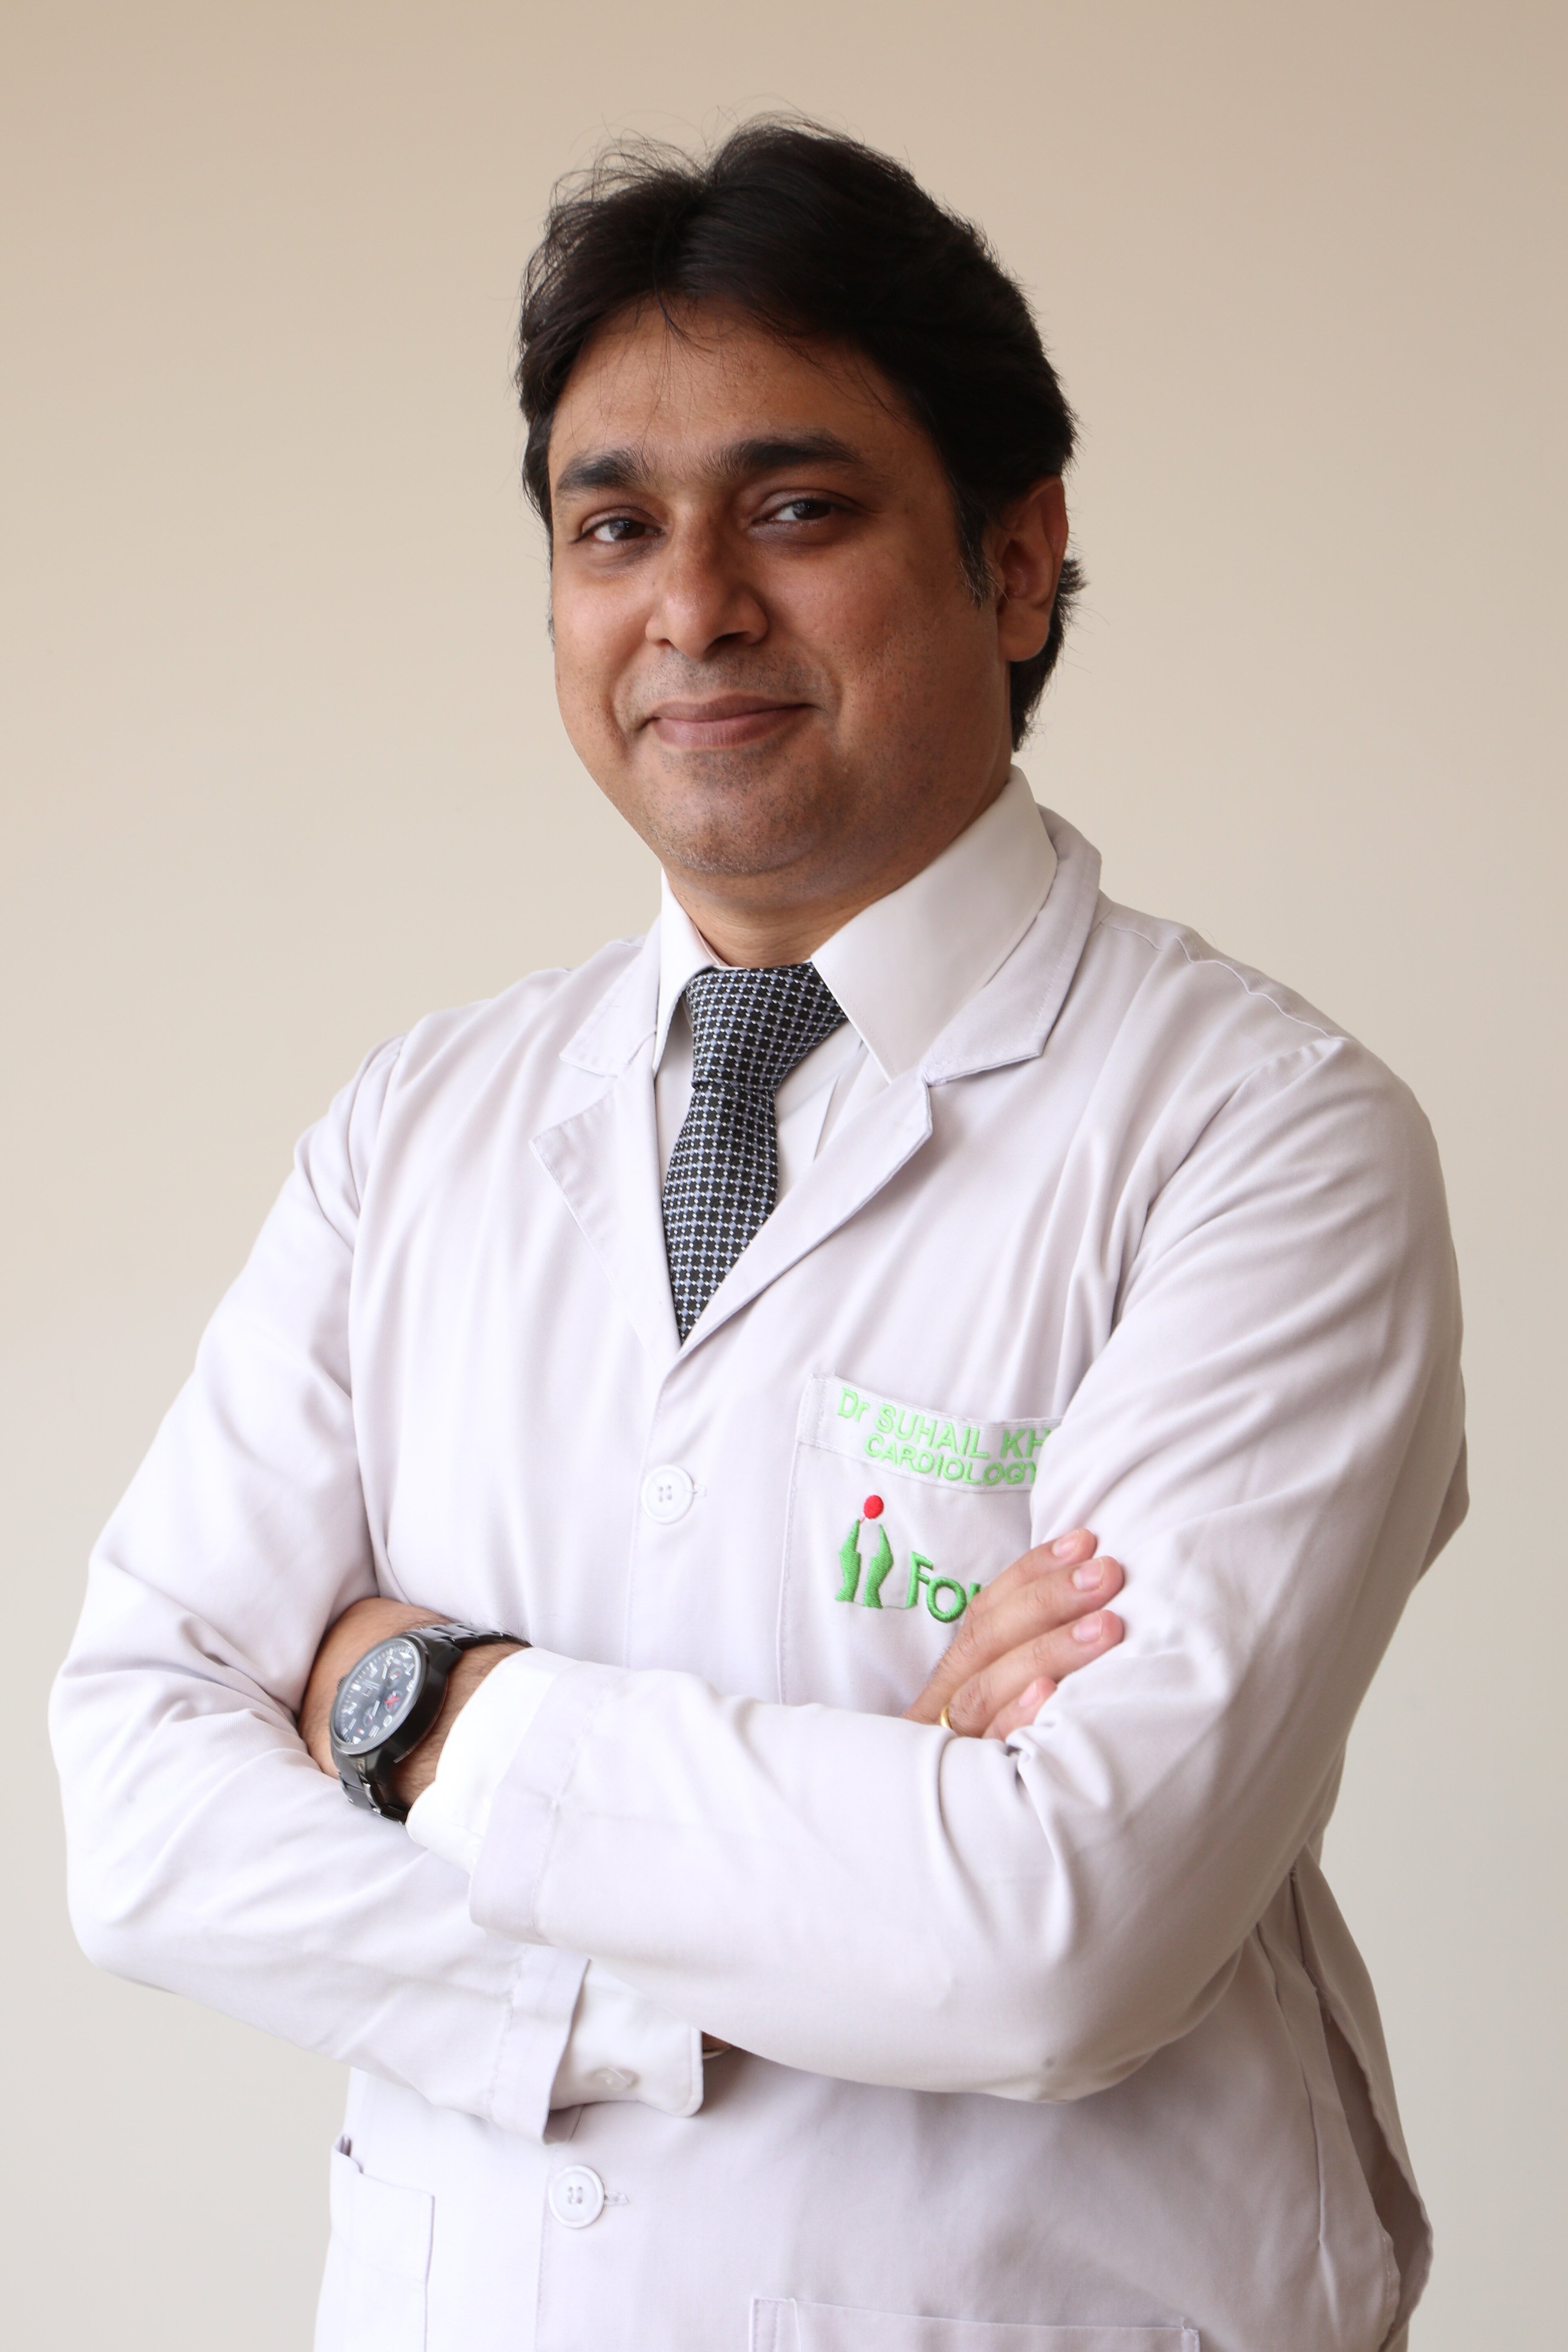 Dr. Suhail Khan